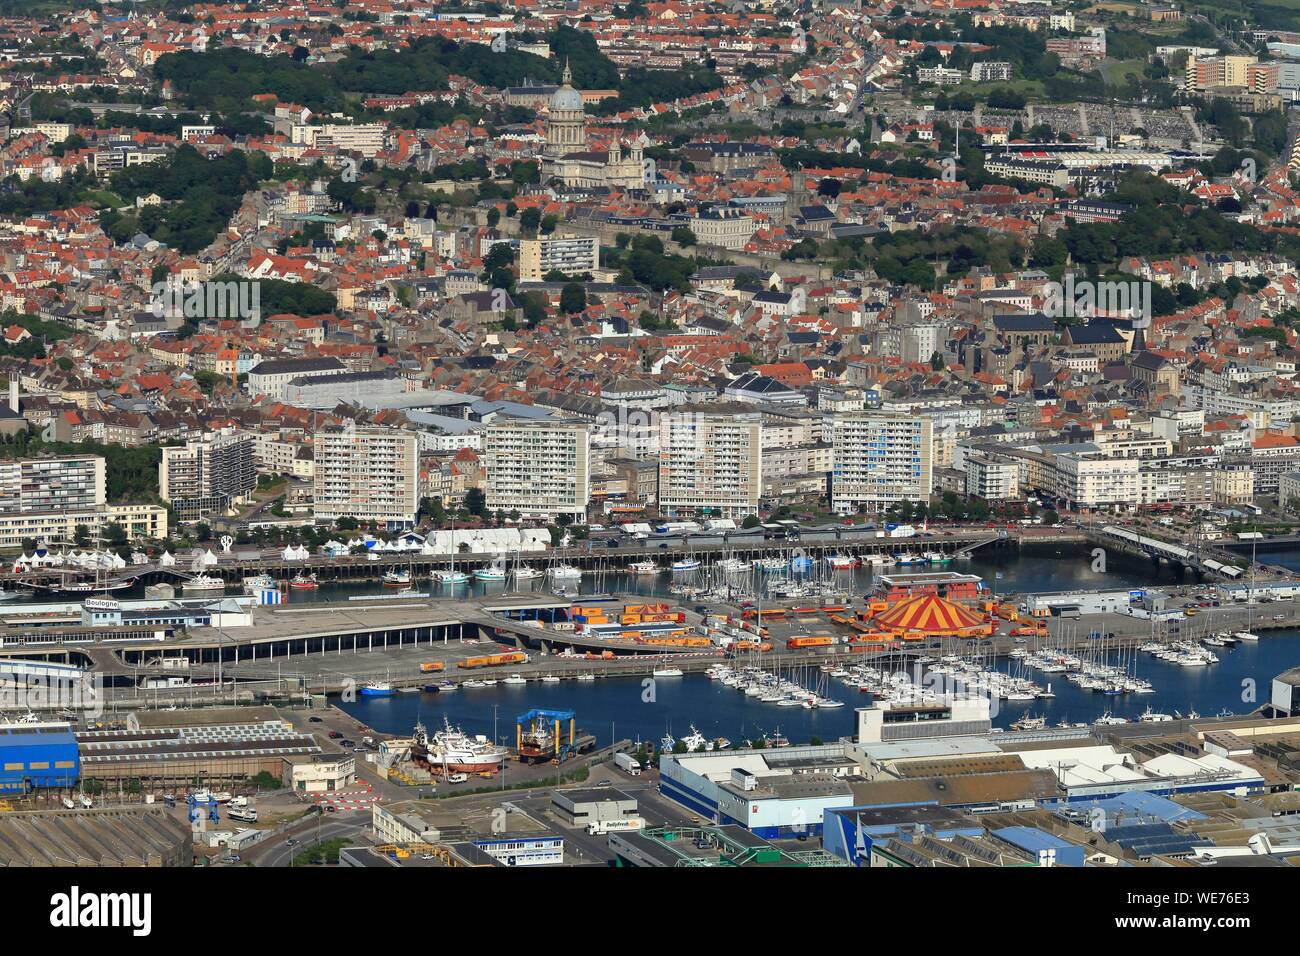 La France, Pas de Calais, Boulogne sur Mer (vue aérienne) Banque D'Images